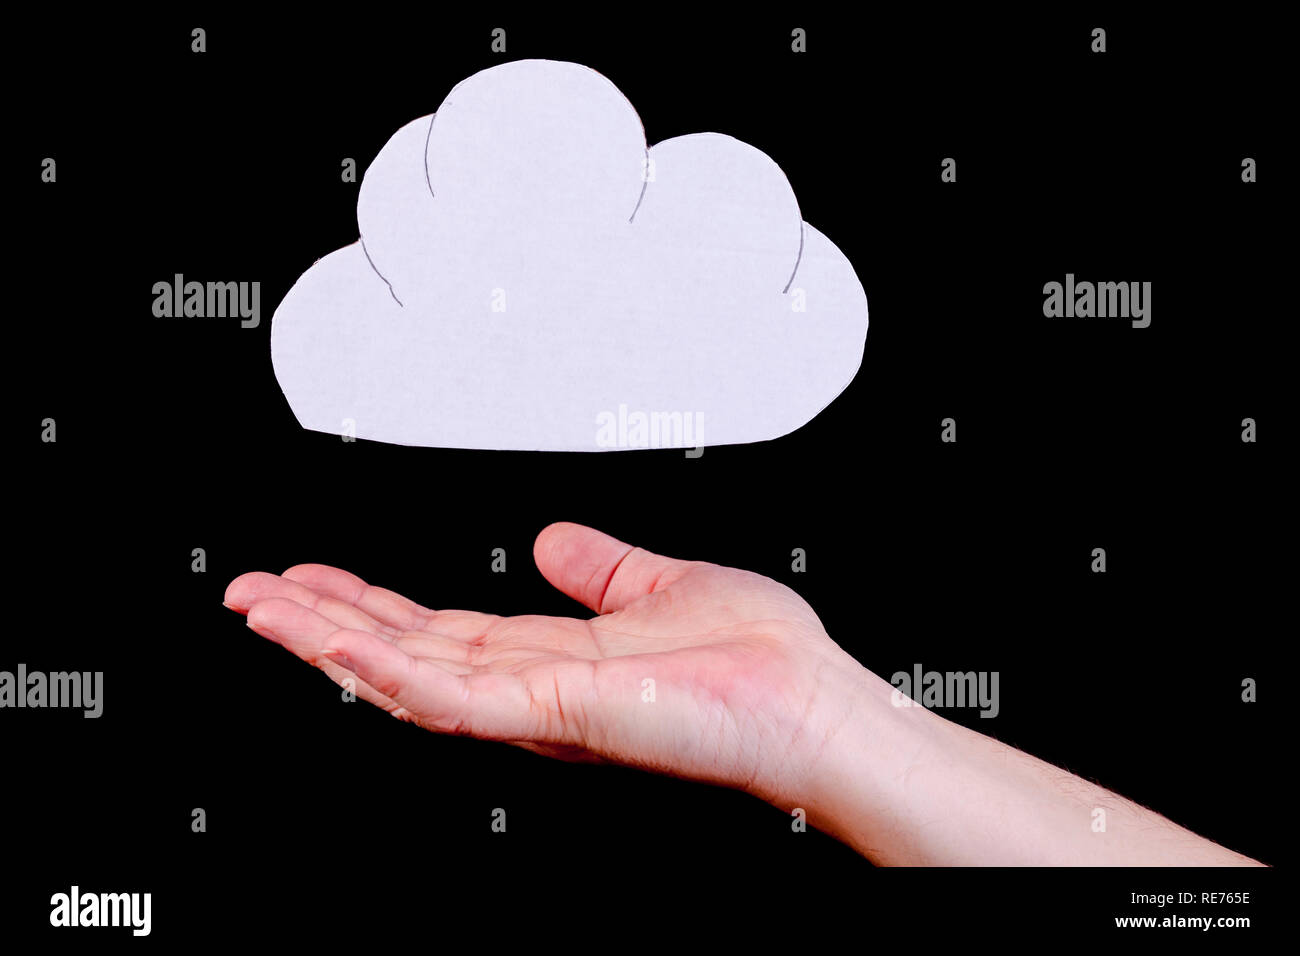 Cloud Computing, Identitätsdiebstahl und Datenschutz Konzept. Cloud Ausschnitt mit einem menschlichen open hand unterhalb der Cloud. Stockfoto